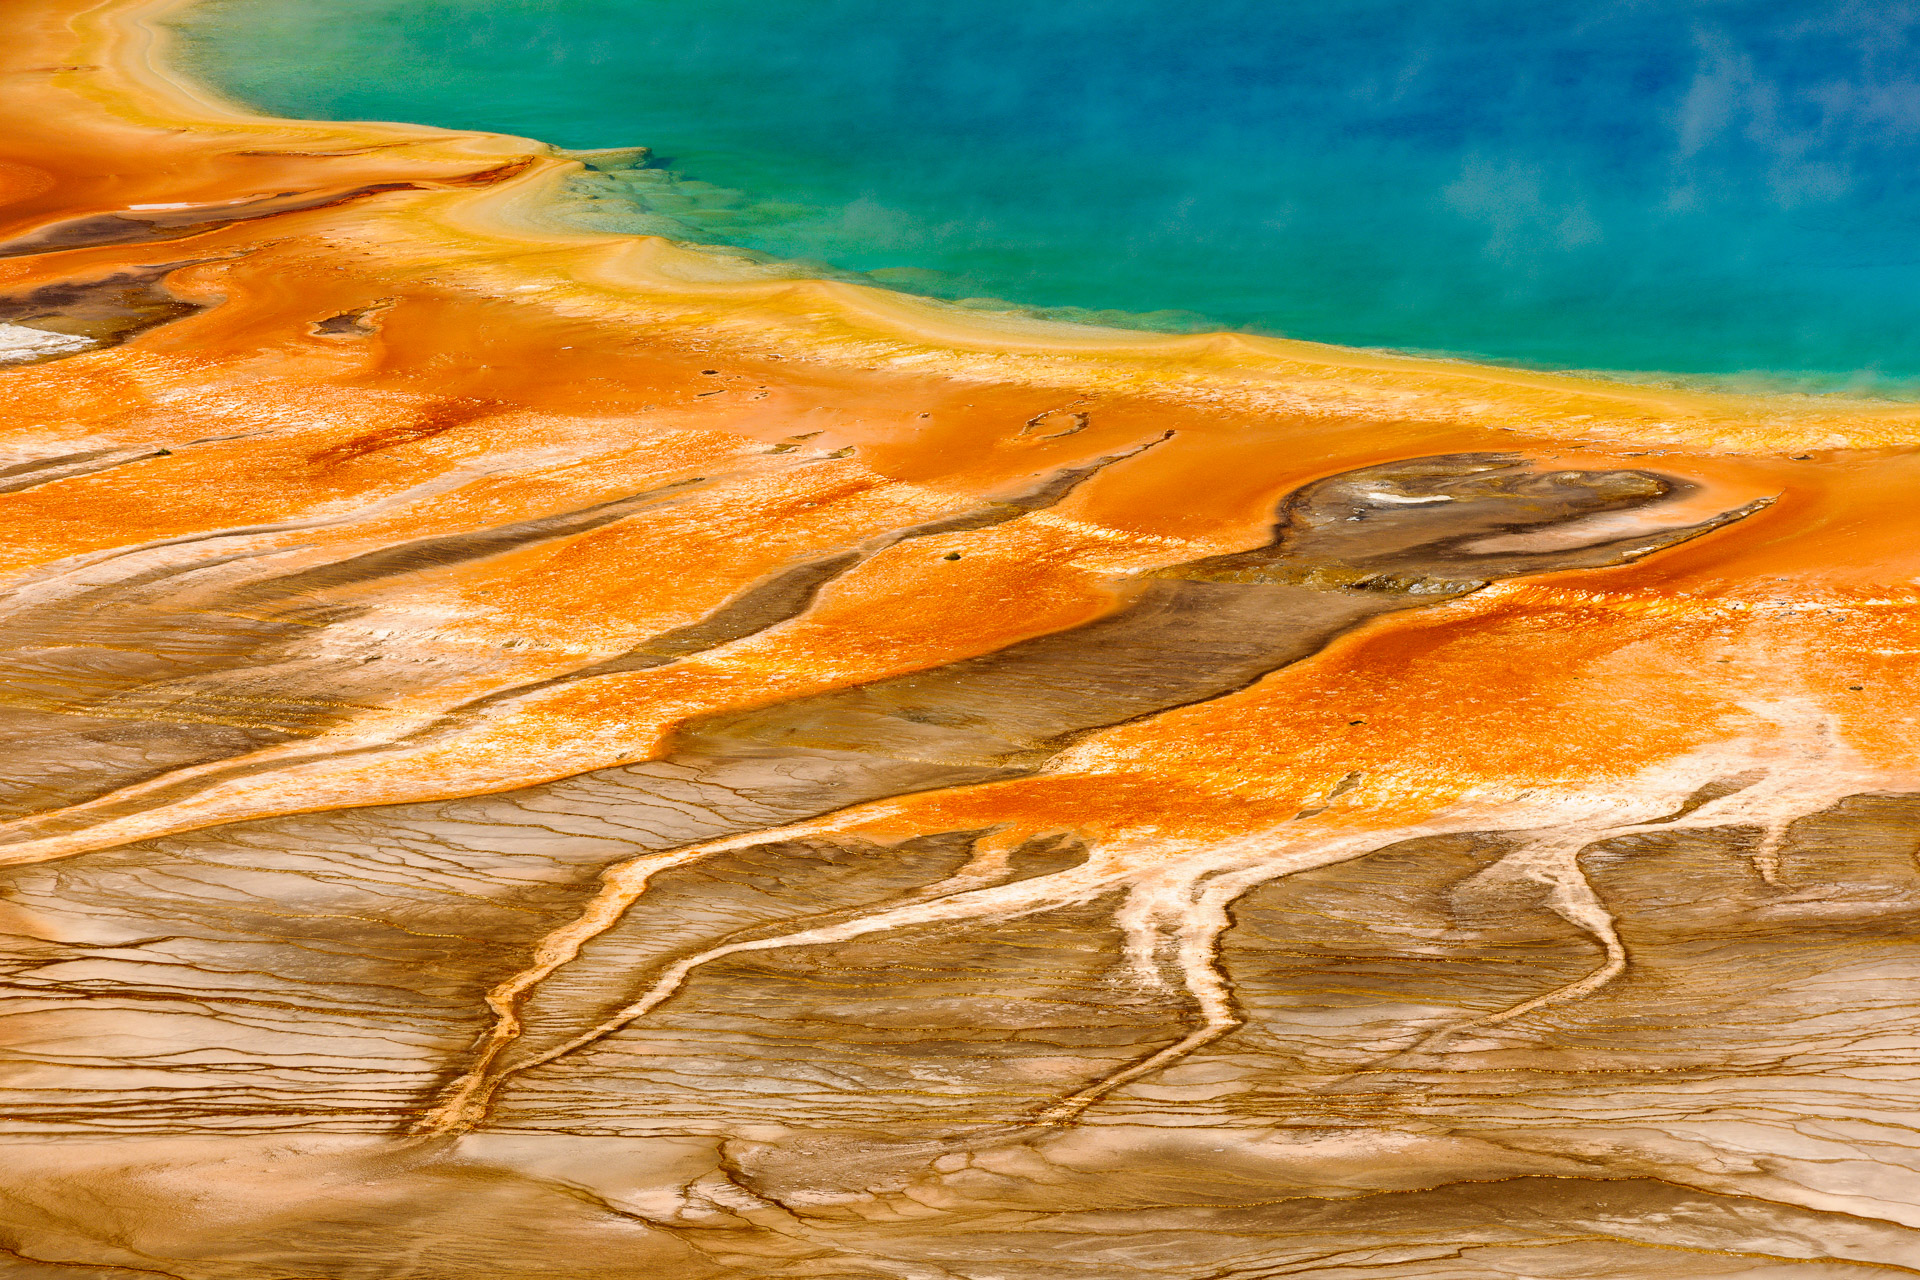 Beeindruckende Landschaften bei Naturfotos-digital.de. Hier ein Naturbild der Grand Prismatic Spring im Yellowstone Nationalpark in den USA.Kamera: NIKON D3X Brennweite: 200mm 1/250 s bei Blende f/9.0